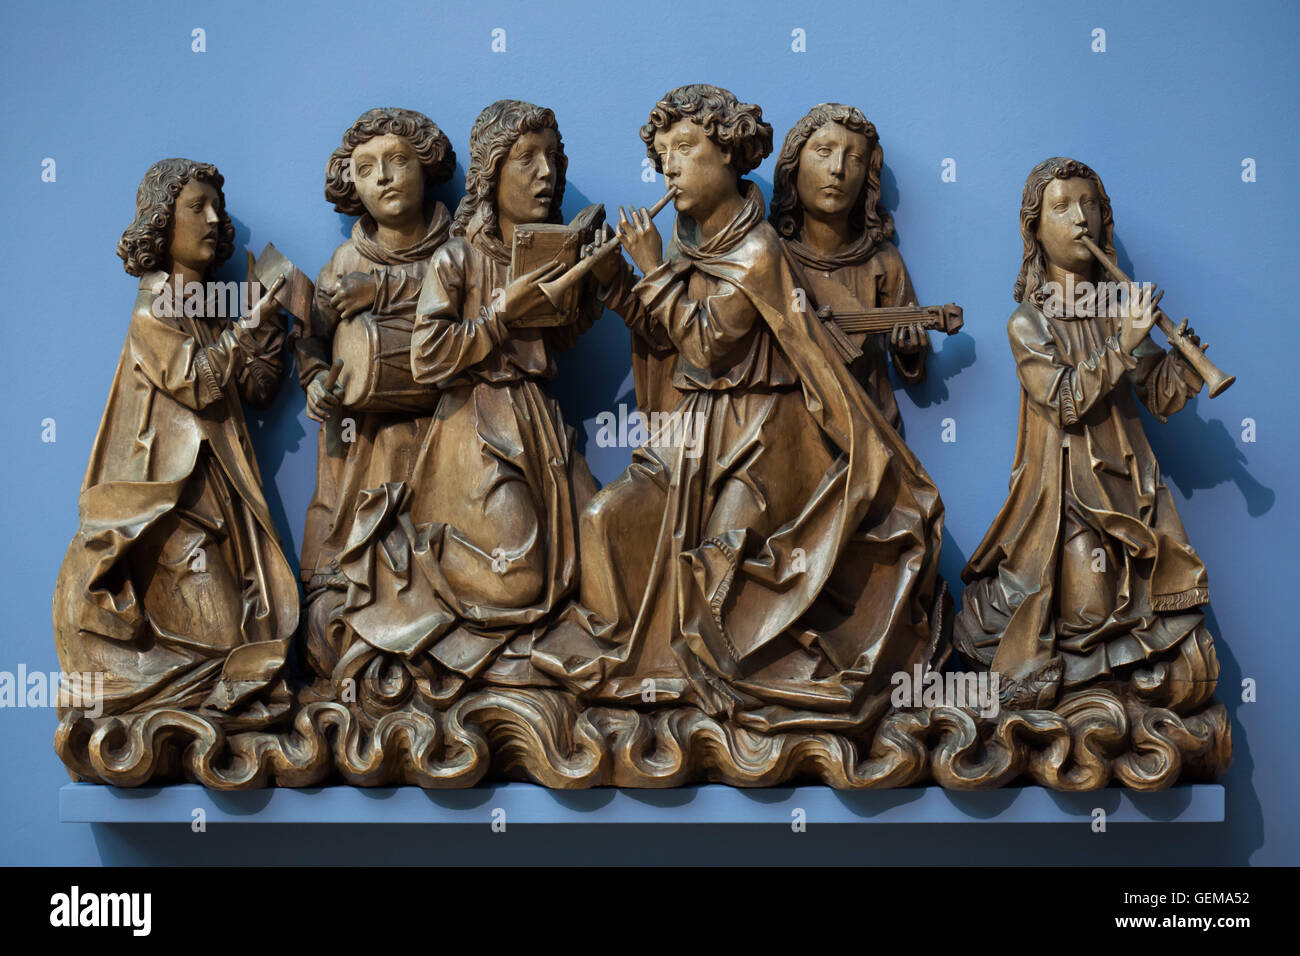 Engel singen und musizieren. Holzstatue von Cca. 1505 von deutschen Bildhauers Tilman Riemenschneider und seiner Werkstatt angezeigt im Bode-Museum in Berlin, Deutschland. Stockfoto